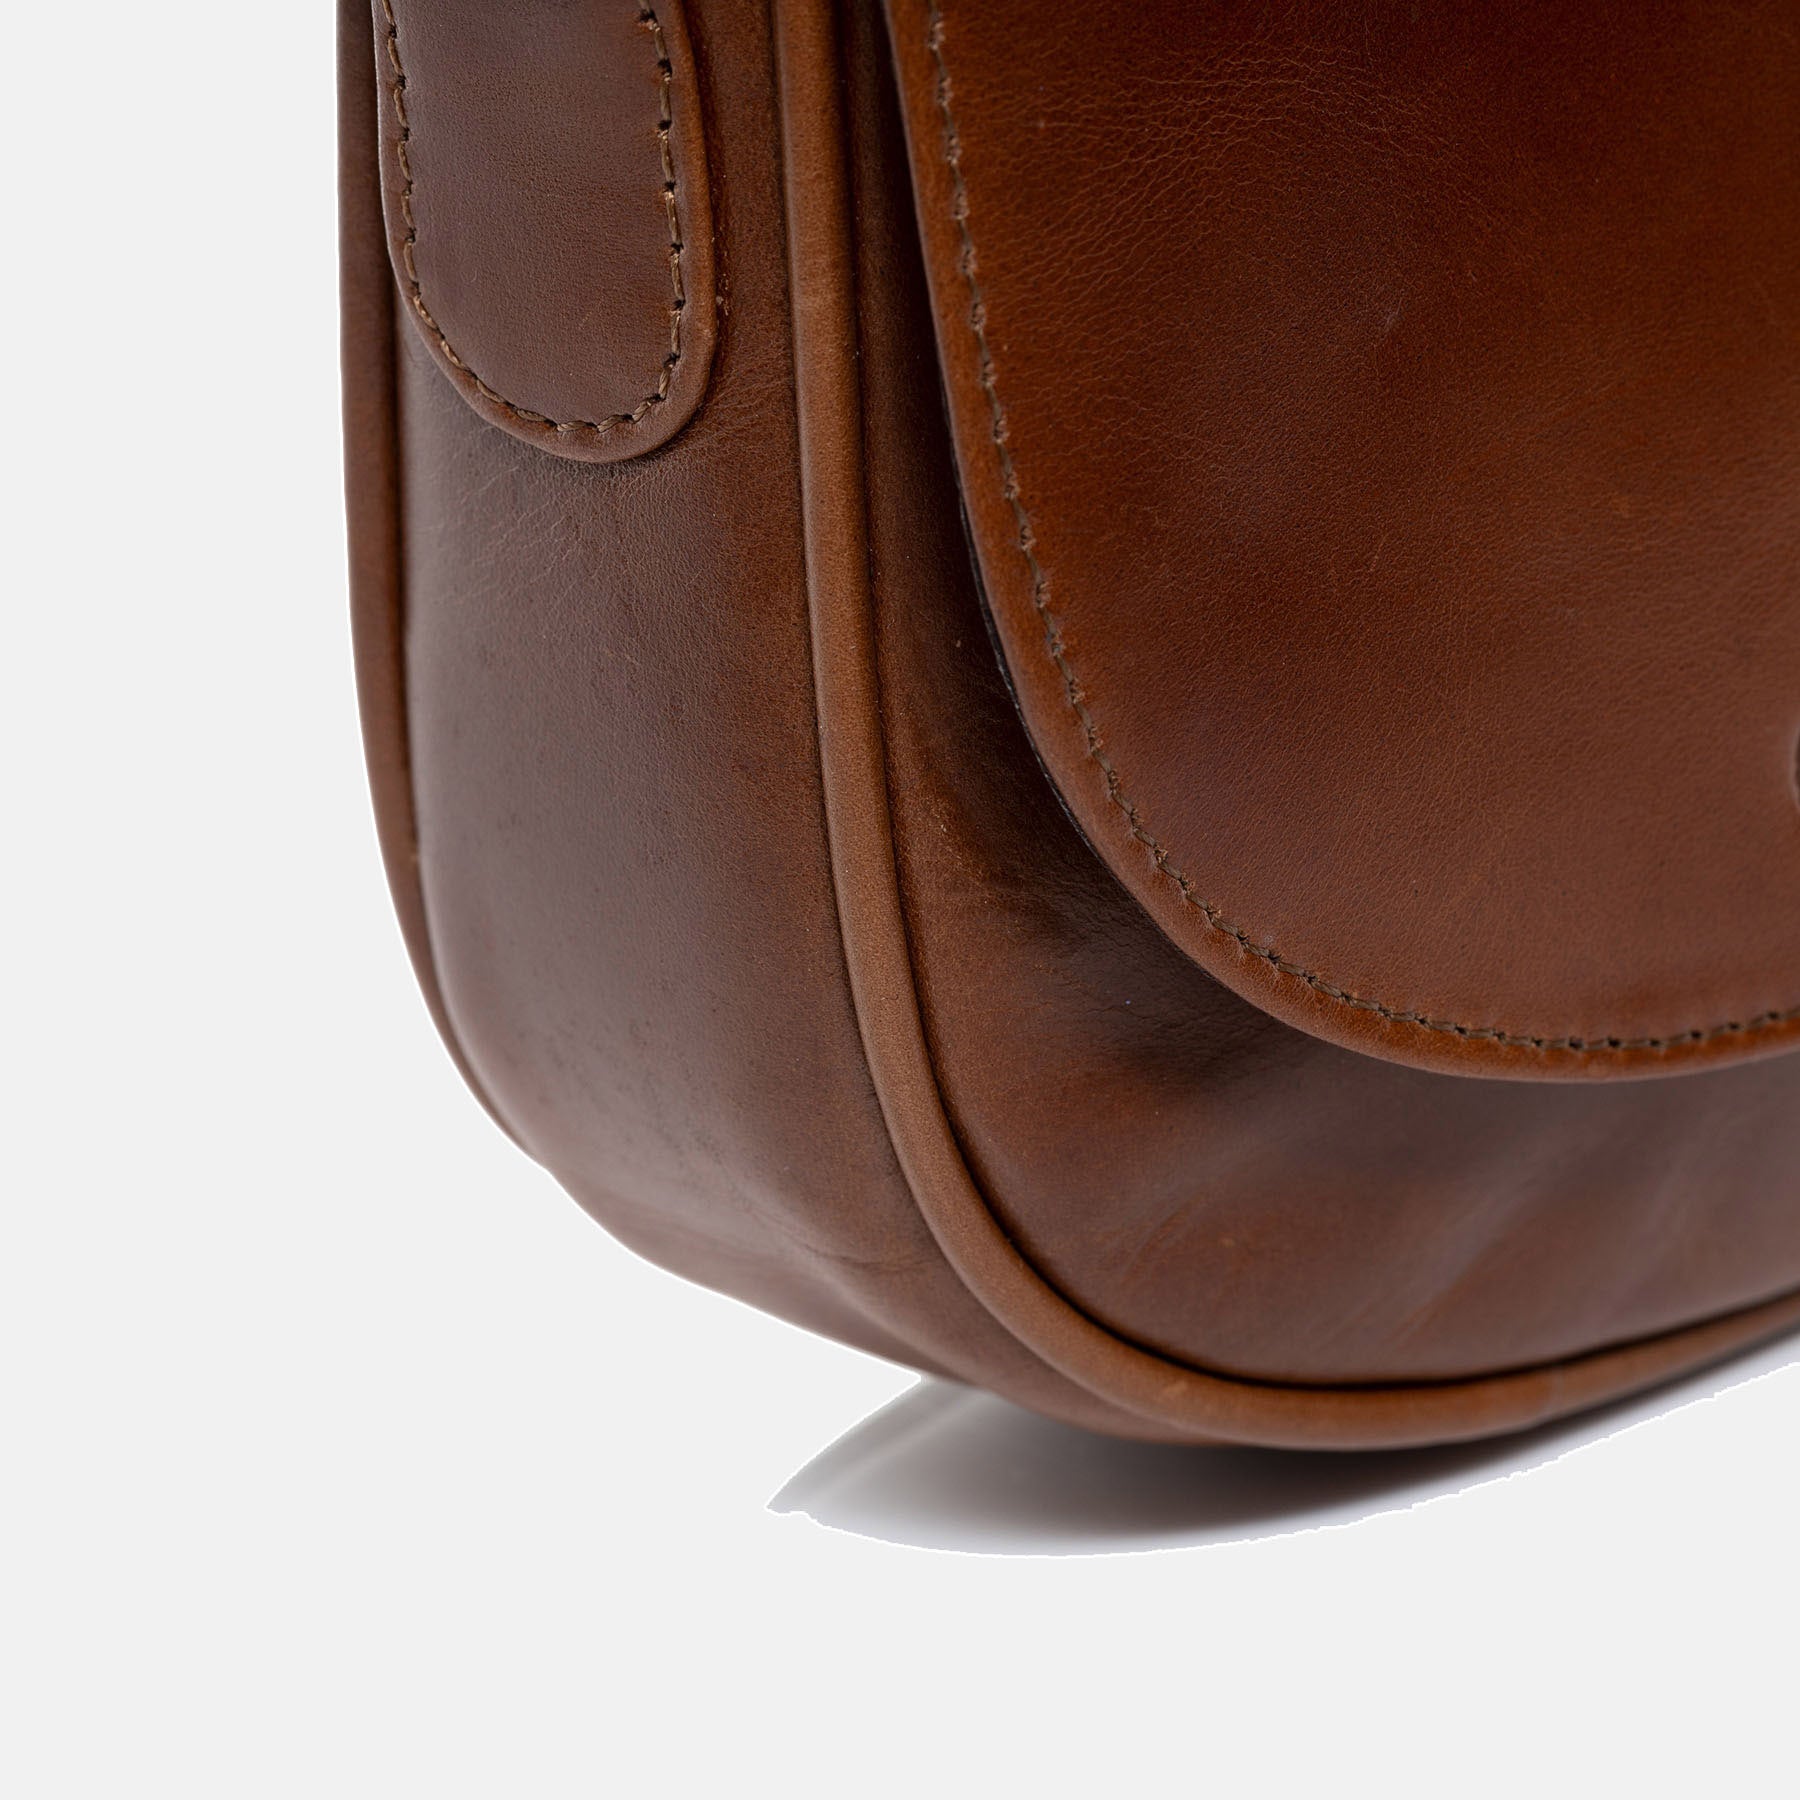 Shoulder bag BRIGHTON natural leather light brown